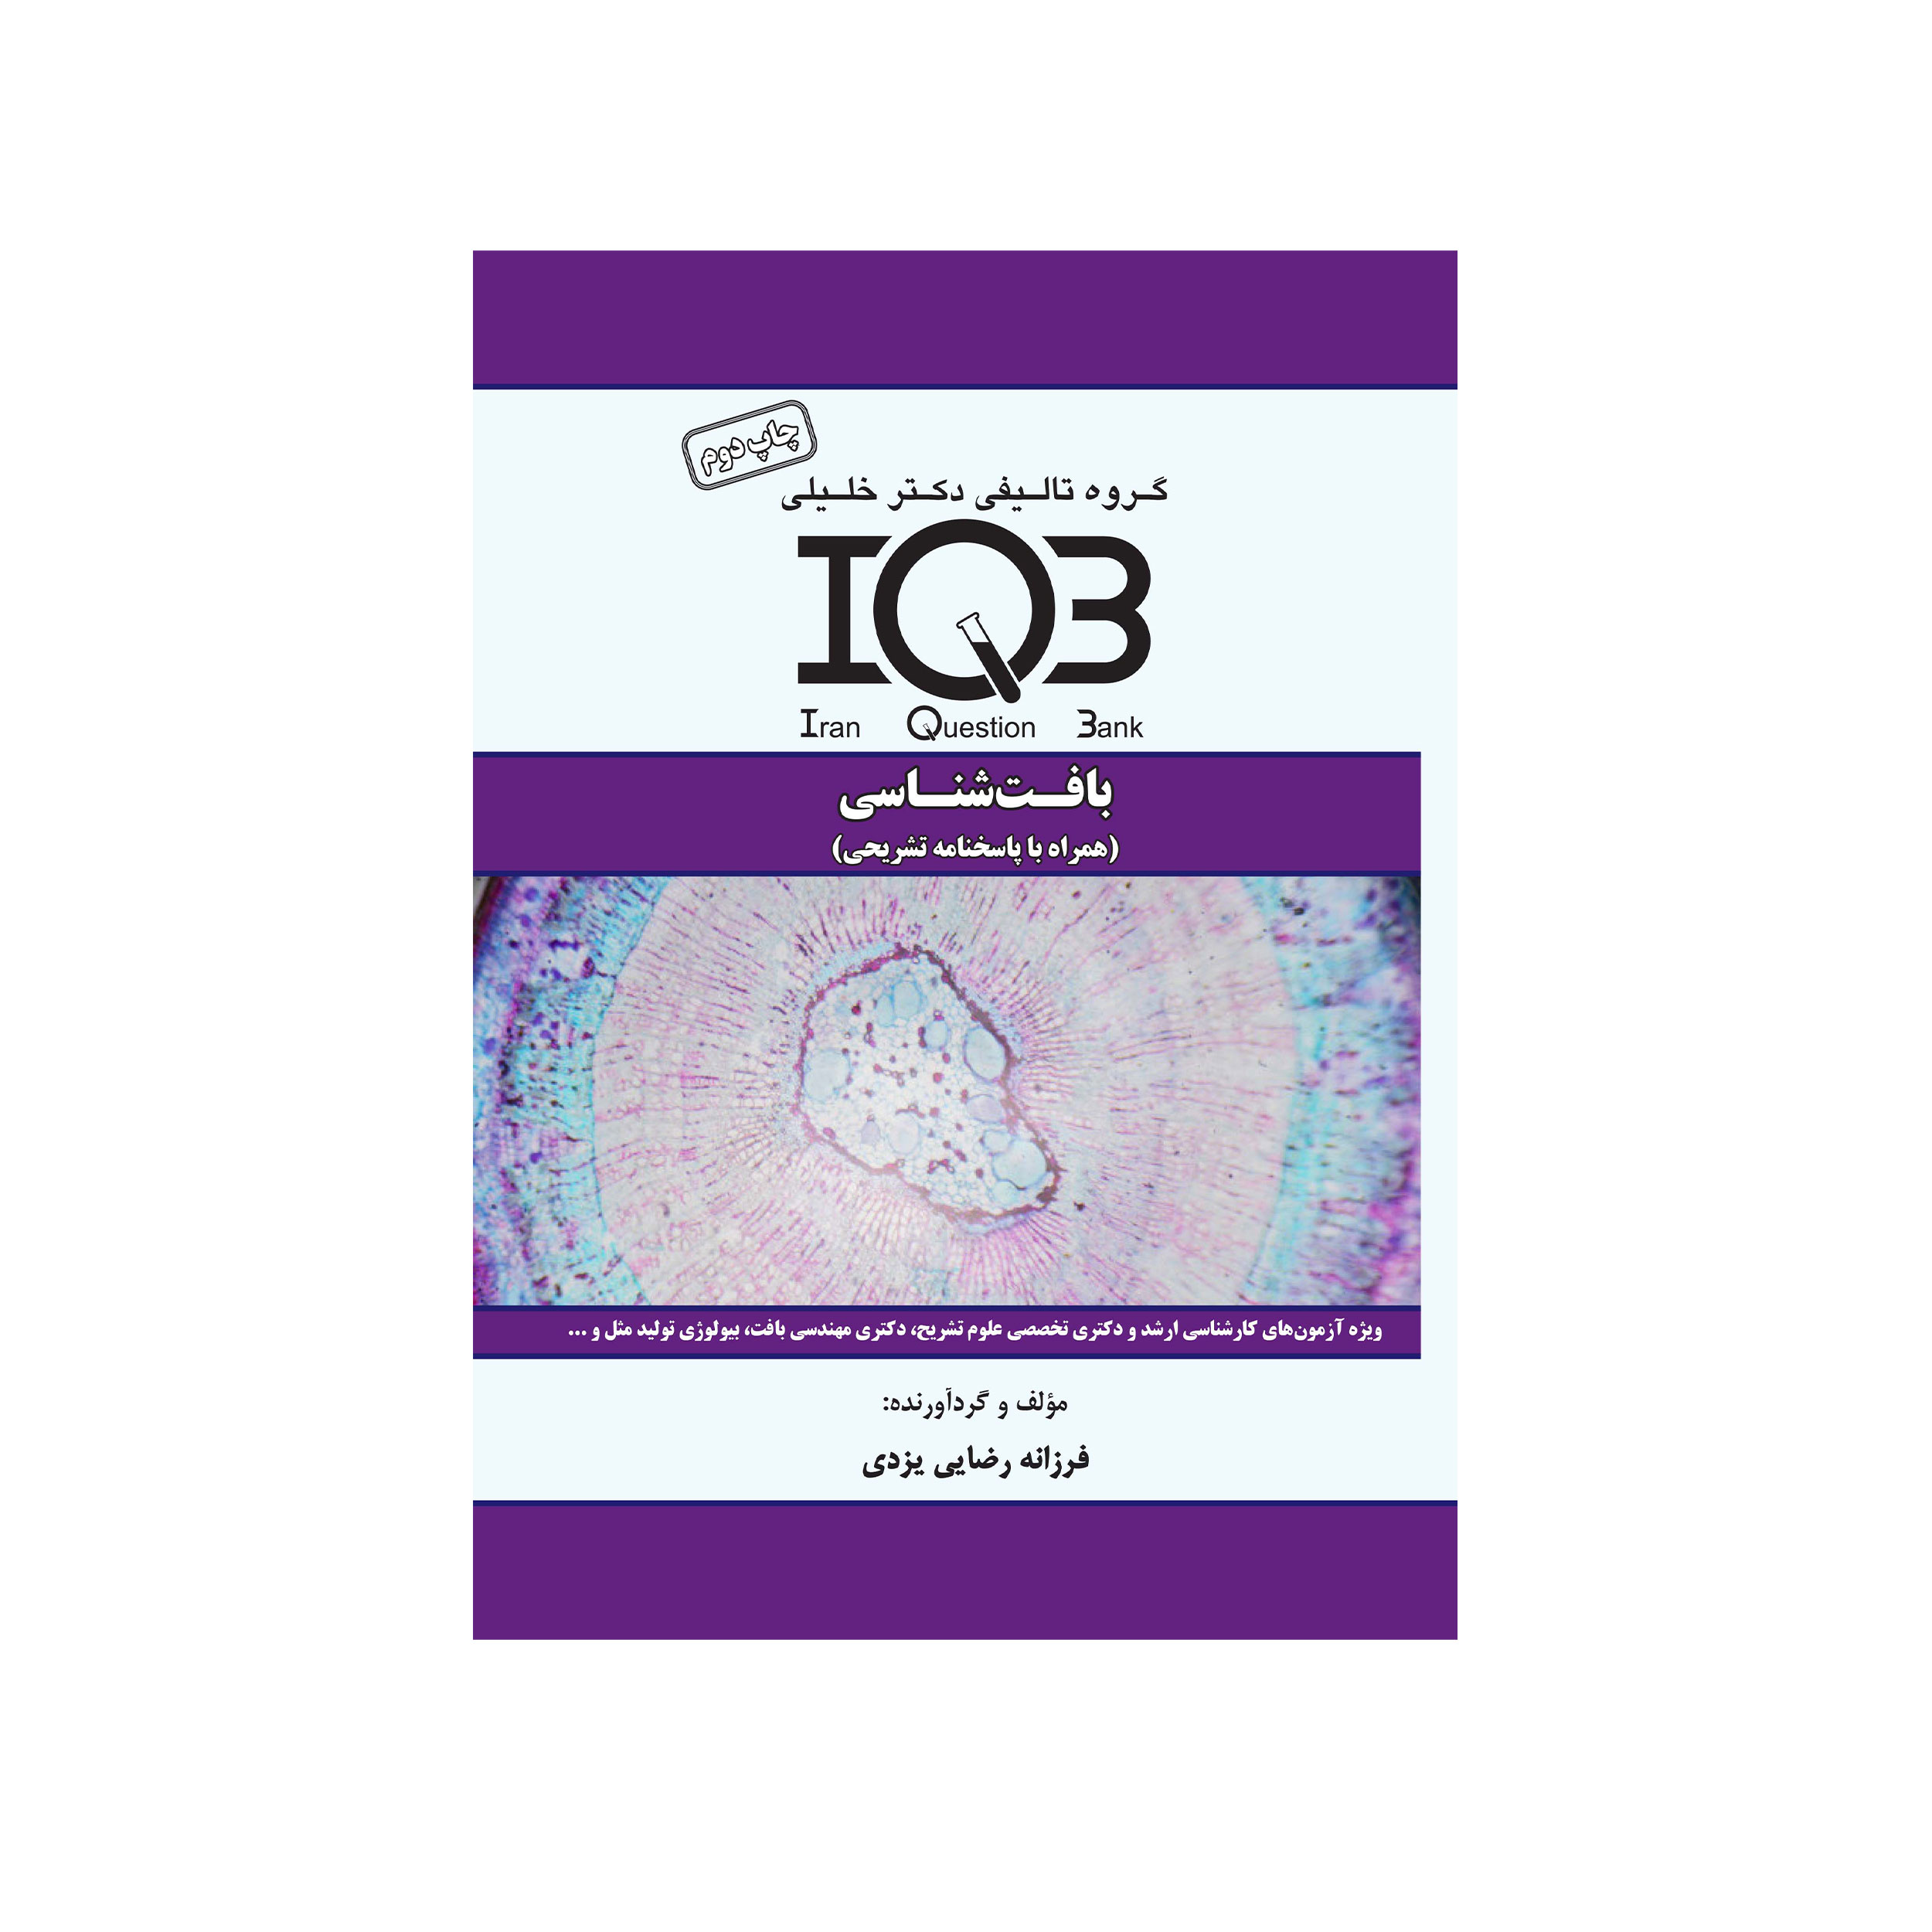 کتاب IQB بافت شناسی اثر فرزانه رضایی یزدی انتشارات گروه تالیفی دکتر خلیلی